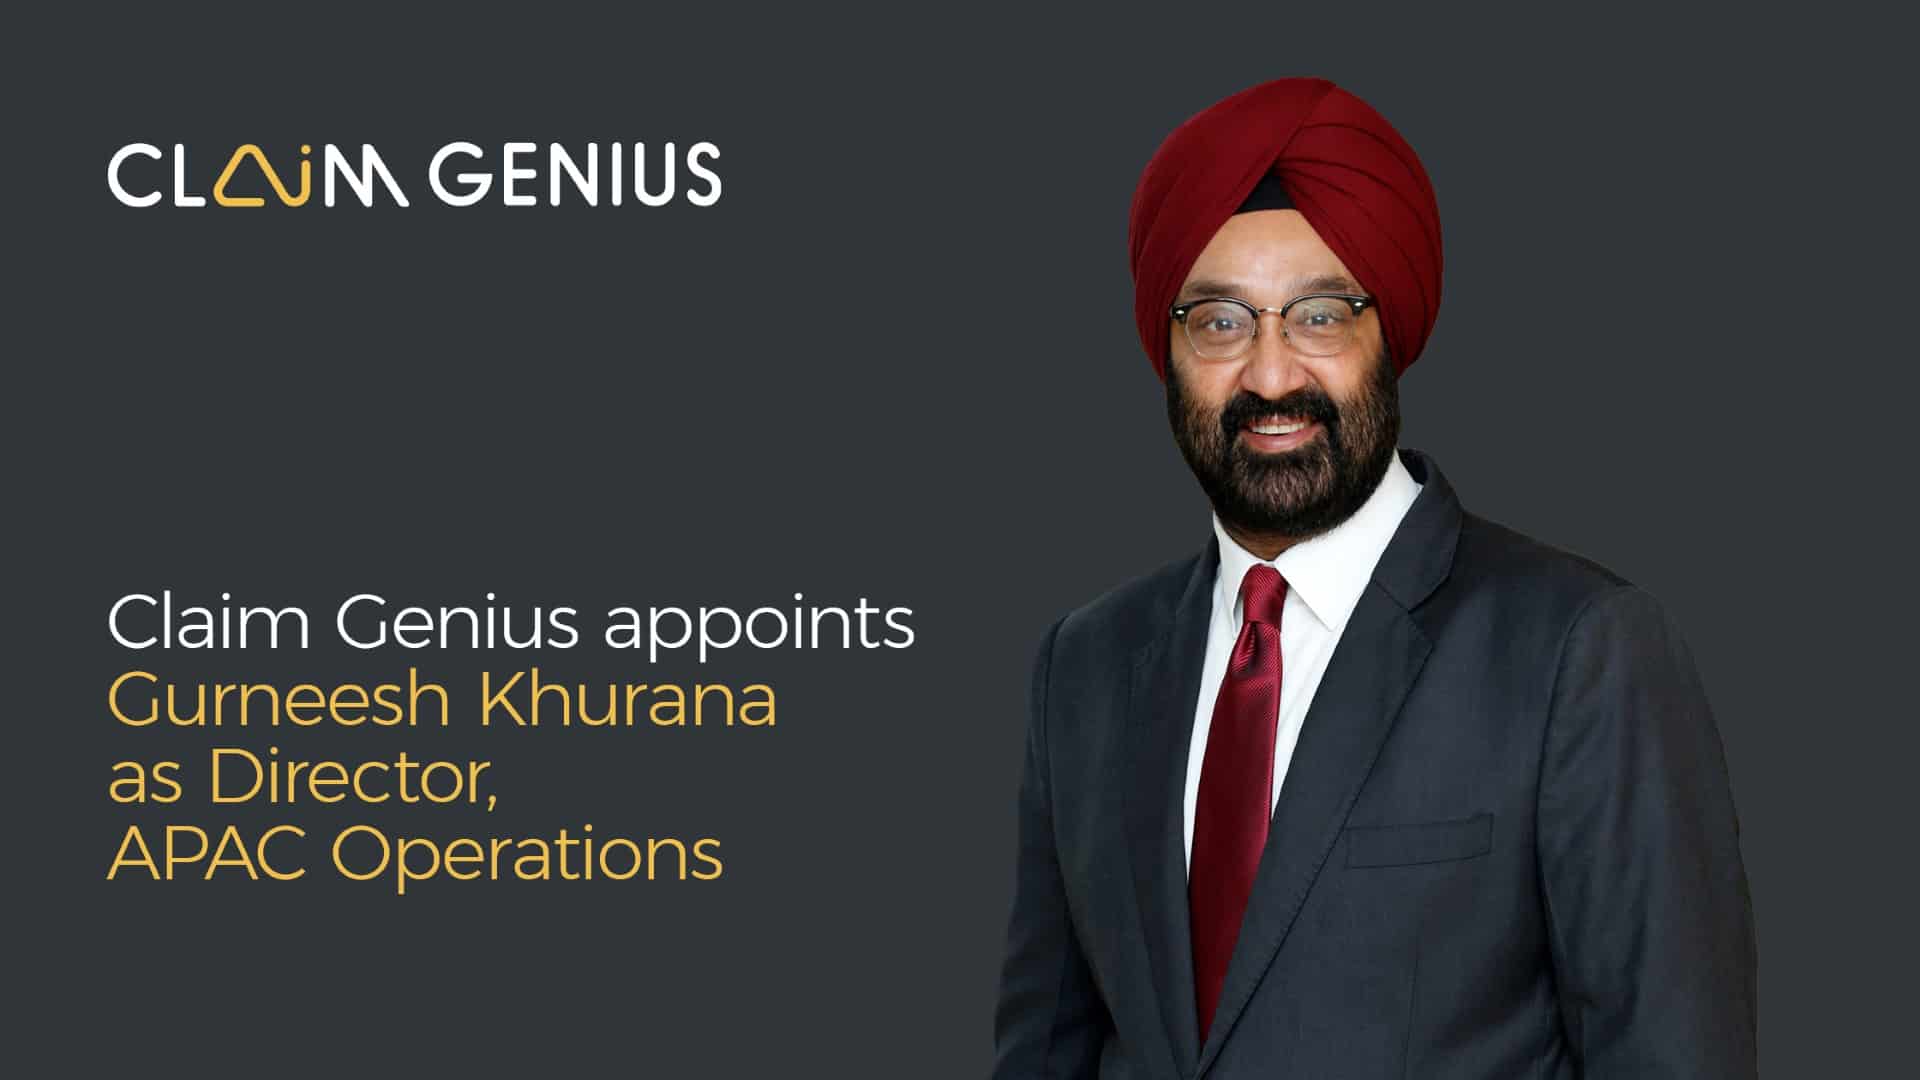 Gurneesh Khurana - Director of APAC Ops at Claim Genius